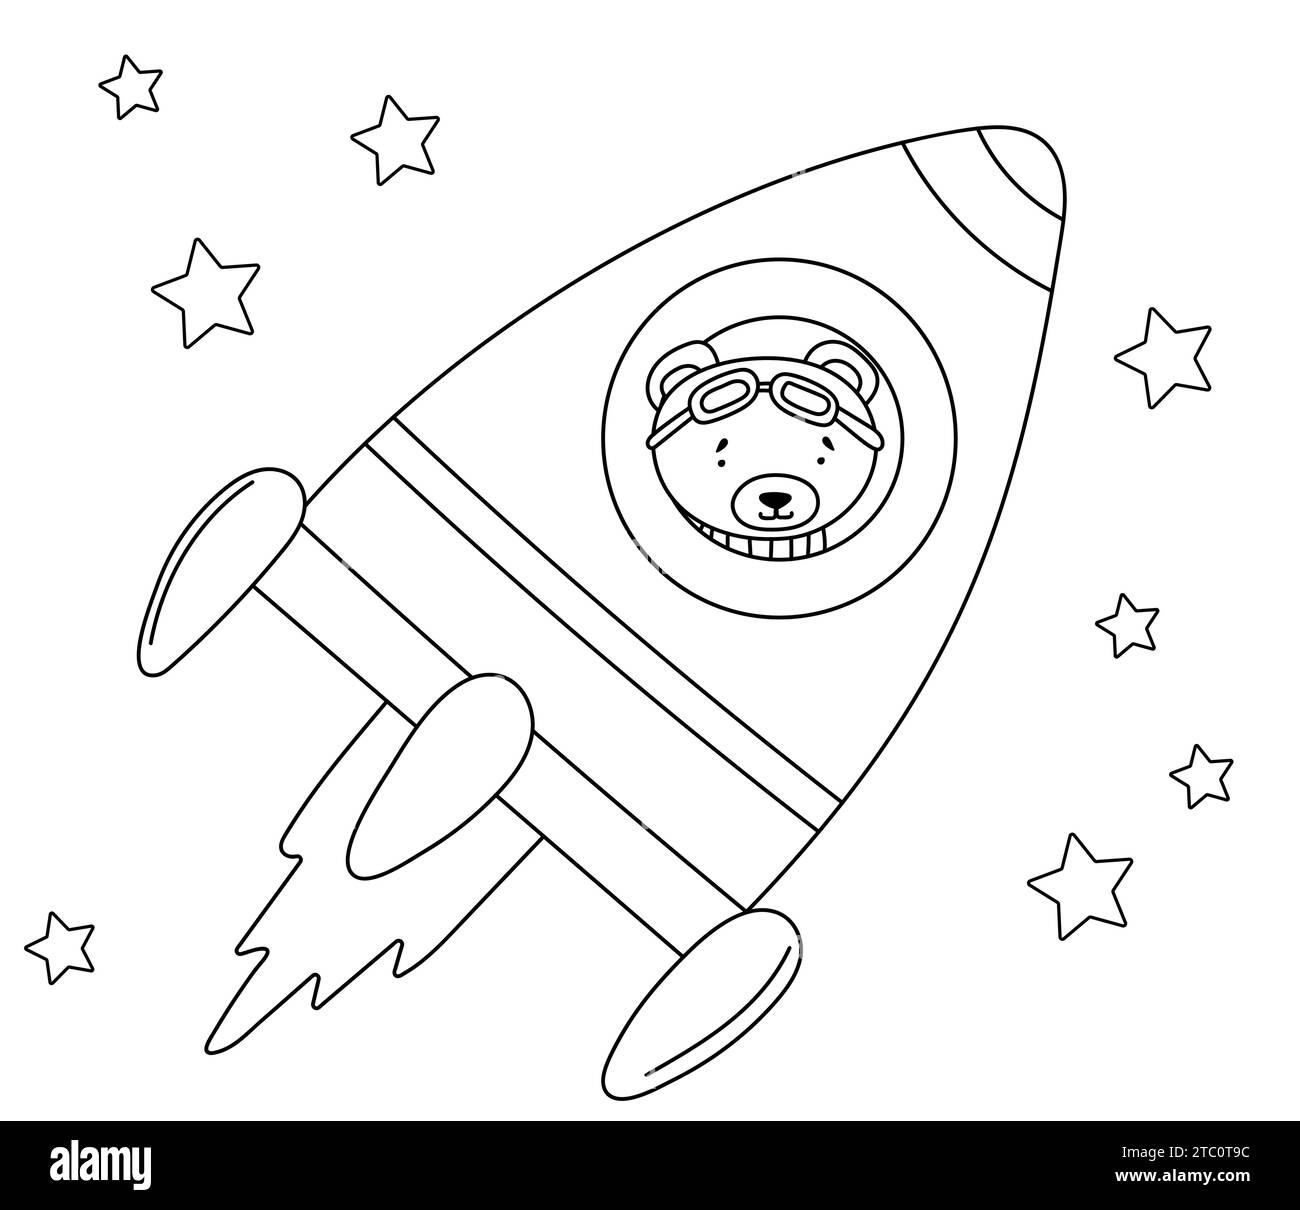 Coloriage pour les enfants : Bear Flying in A Rocket Among Stars, for Children'S Creativity est un livre de coloriage engageant pour les enfants avec des illustrations vectorielles d'Un ours Flying in A Rocket Among Stars Illustration de Vecteur